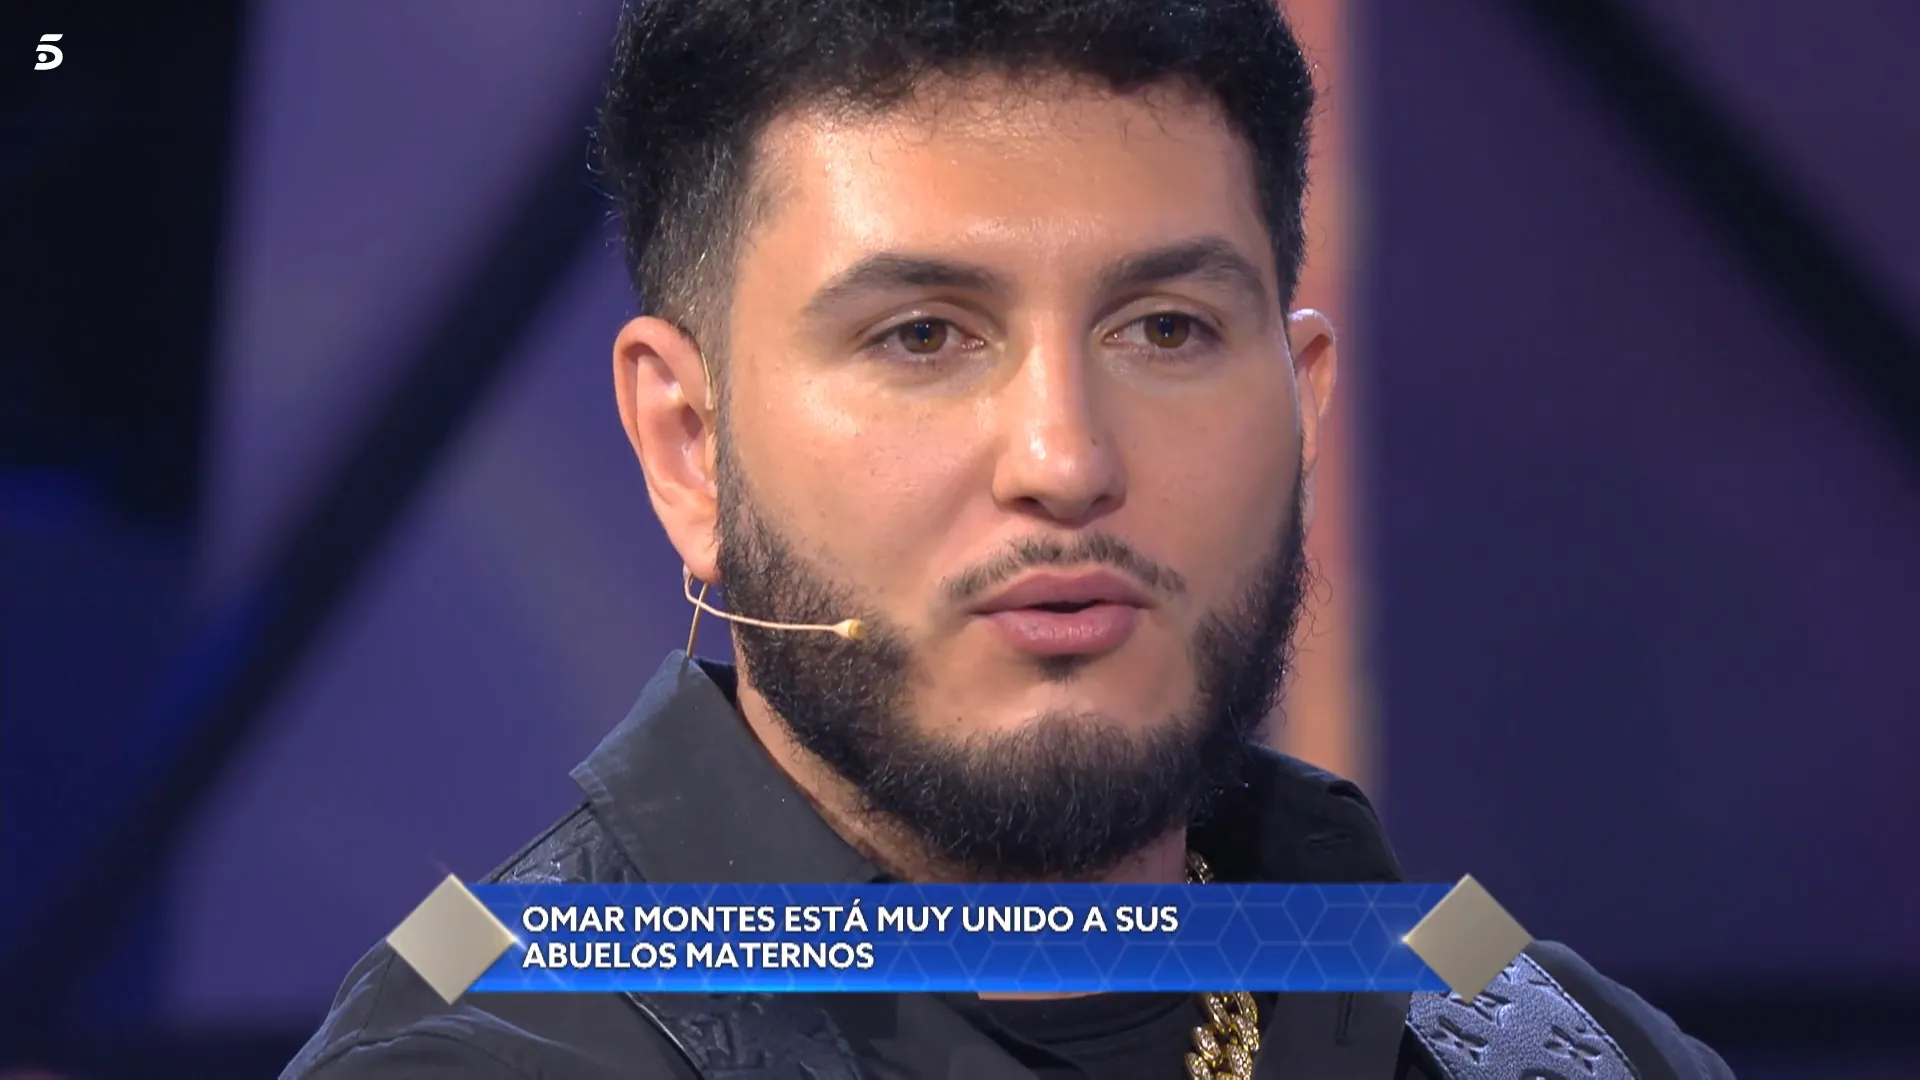 Omar Montes ha hablado sin tapujos sobre los años más difíciles de su vida (Telecinco)